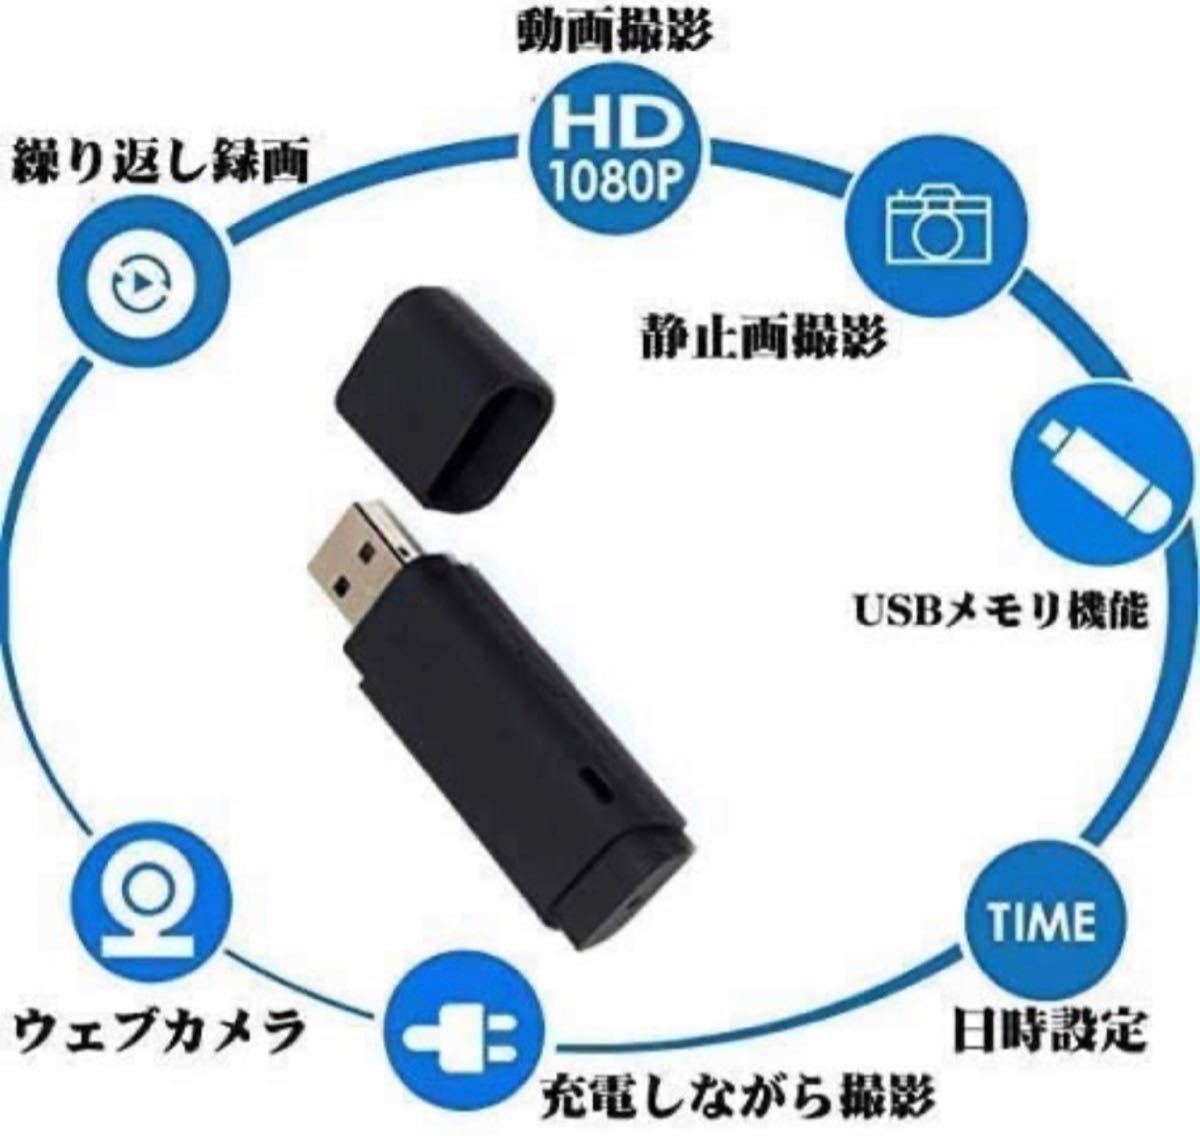 USBモリメ型カメラ 超小型隠しカメラ1080P HD 256Gまで 小型盗撮防犯監視ビデオカメラ